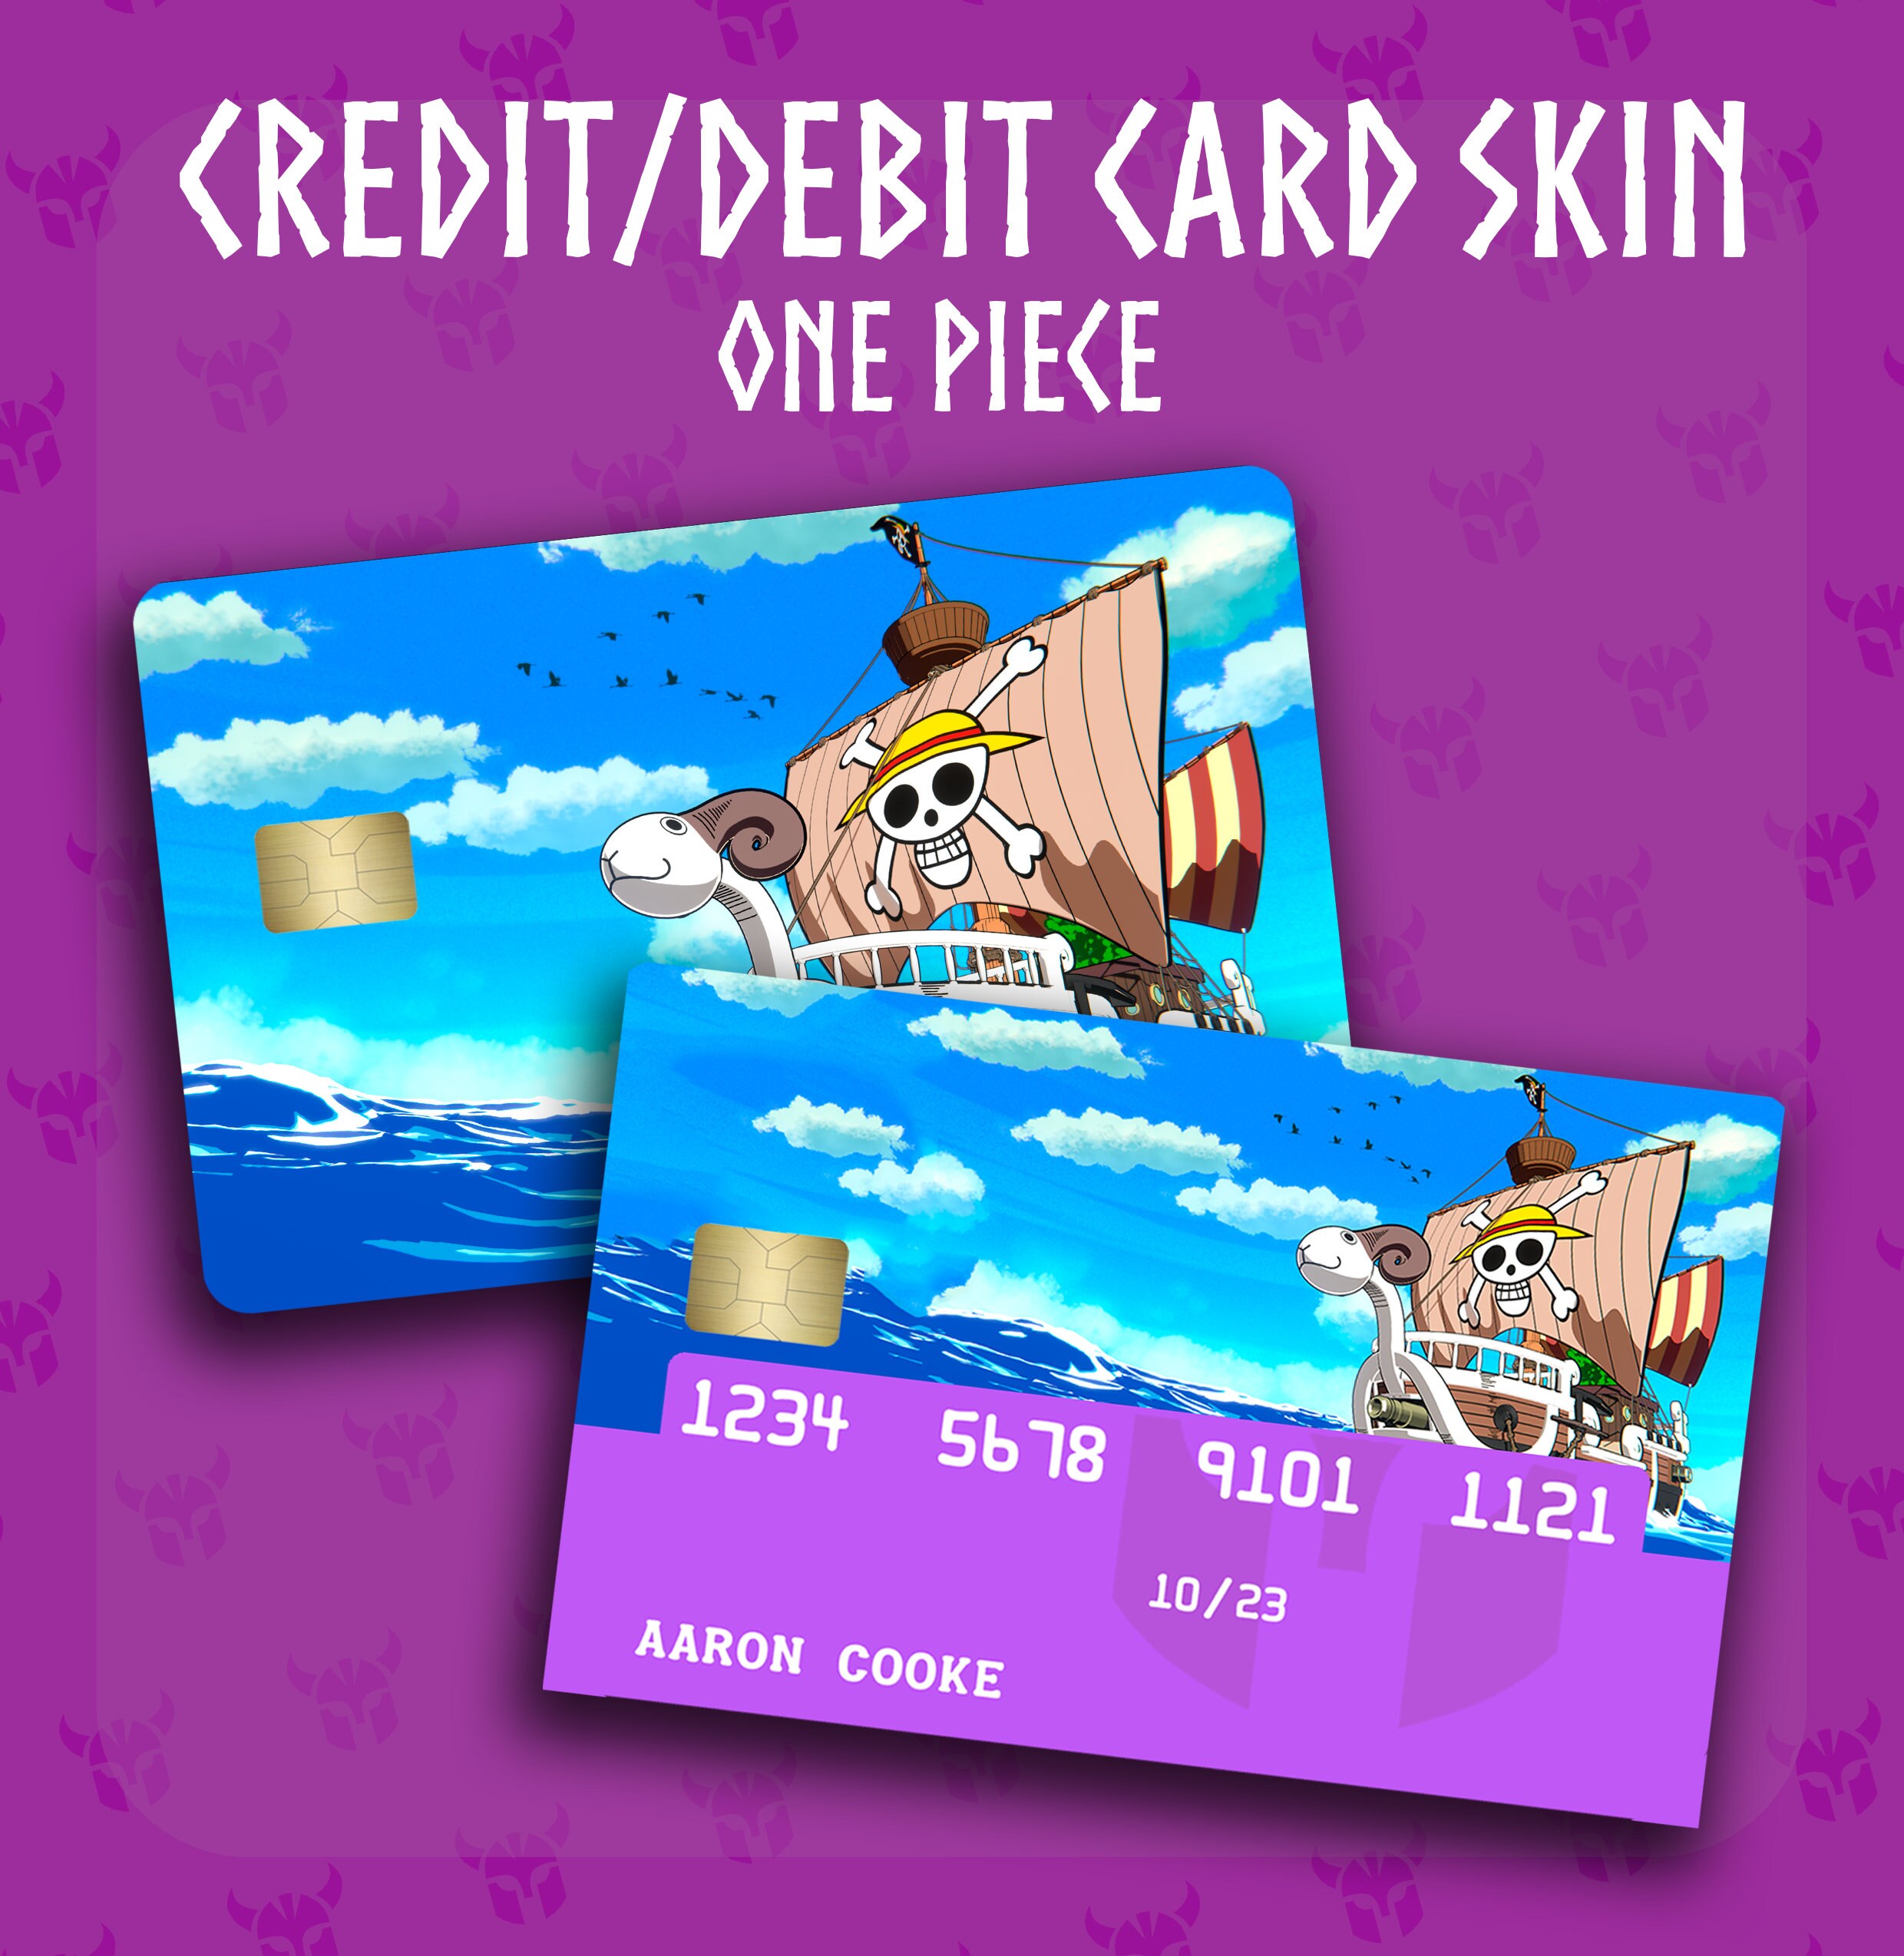 Autocollant Carte Bancaire One Piece